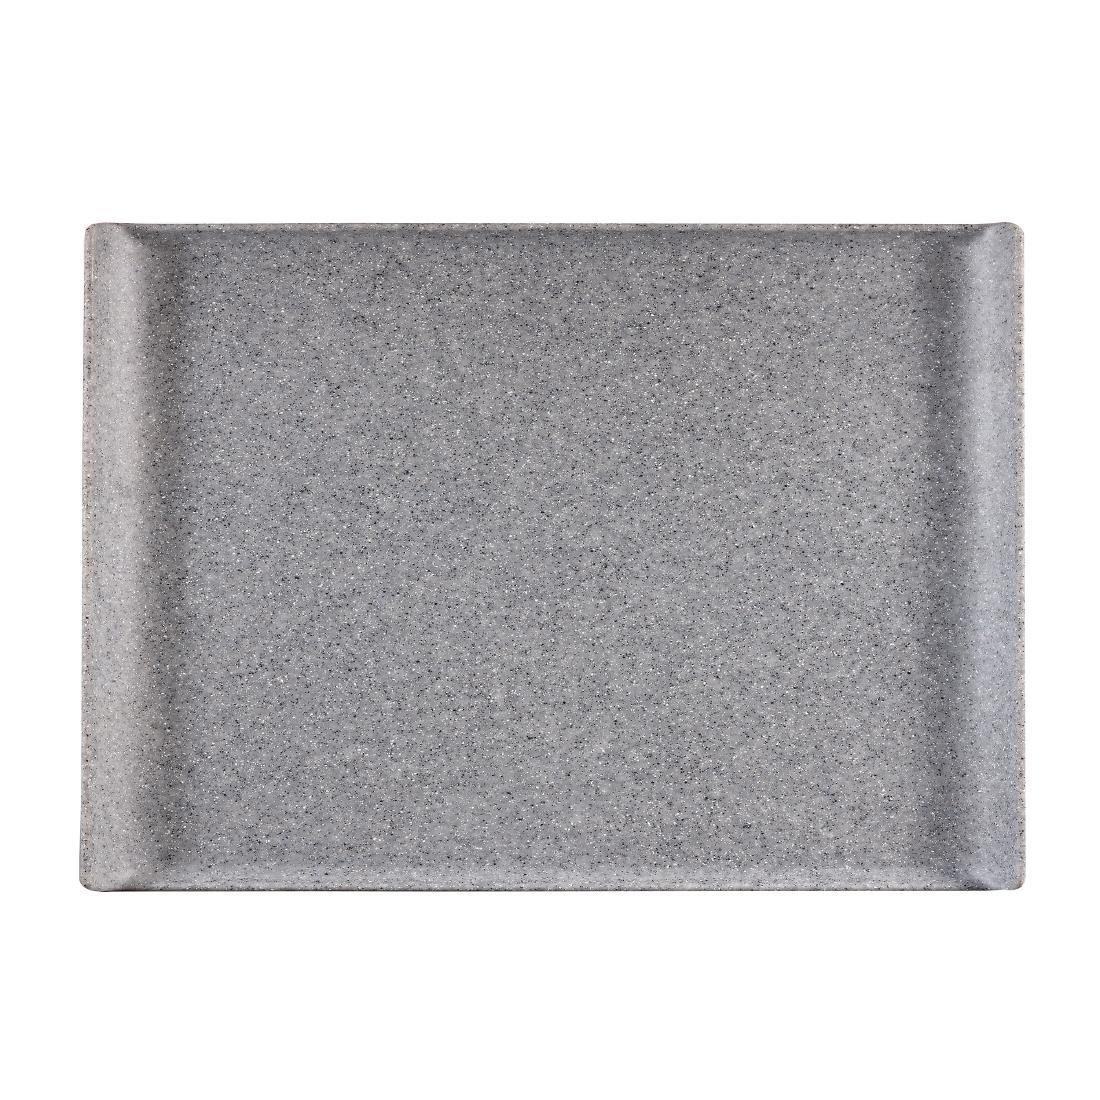 Churchill Melamine GN 1/1 Rectangular Trays Granite 530mm (Pack of 2) - CY774  - 1